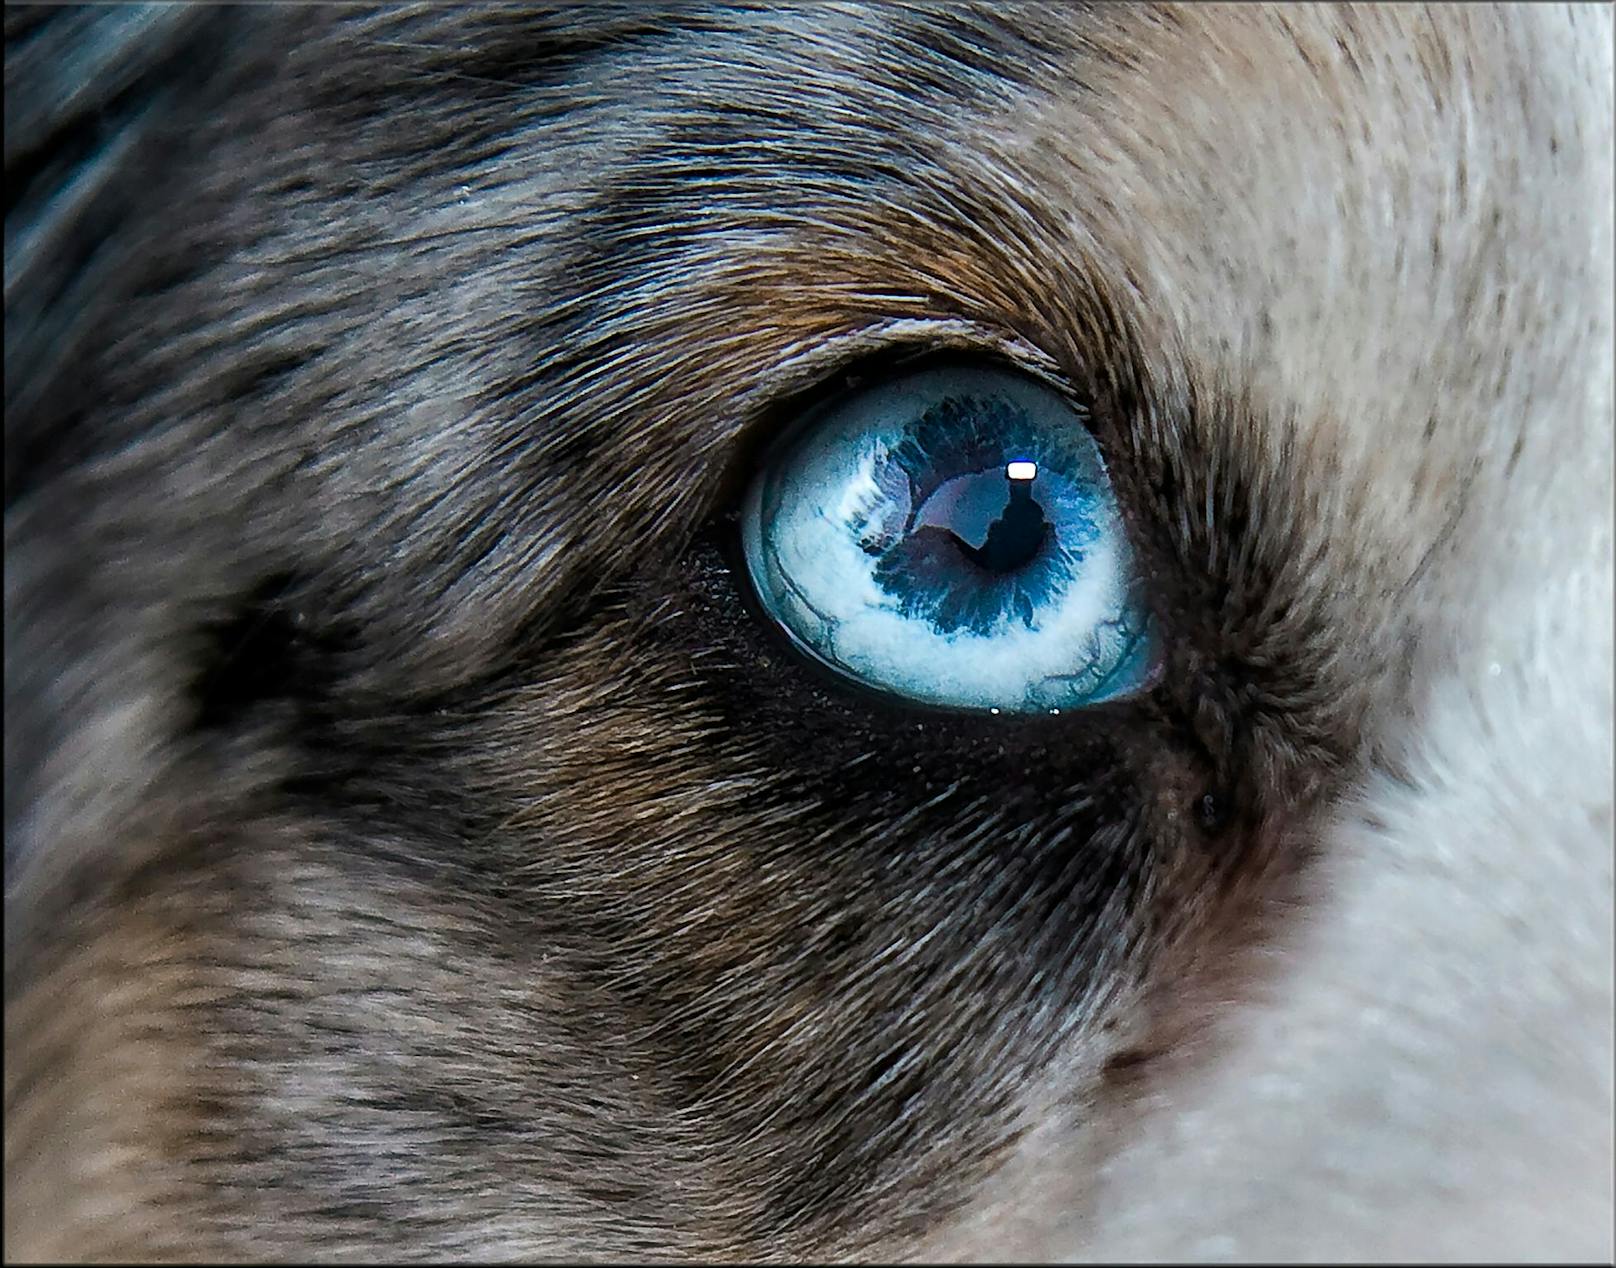 Hunde haben <strong>"dichromatische" Augen</strong>. Sie können also nur zwischen Blau und Geld unterscheiden und die Fähigkeit Rot und Grün wahrzunehmen ist schwächer als bei uns Menschen mit "trichromatischen" Augen - wir sehen alle Grundfarben.&nbsp;